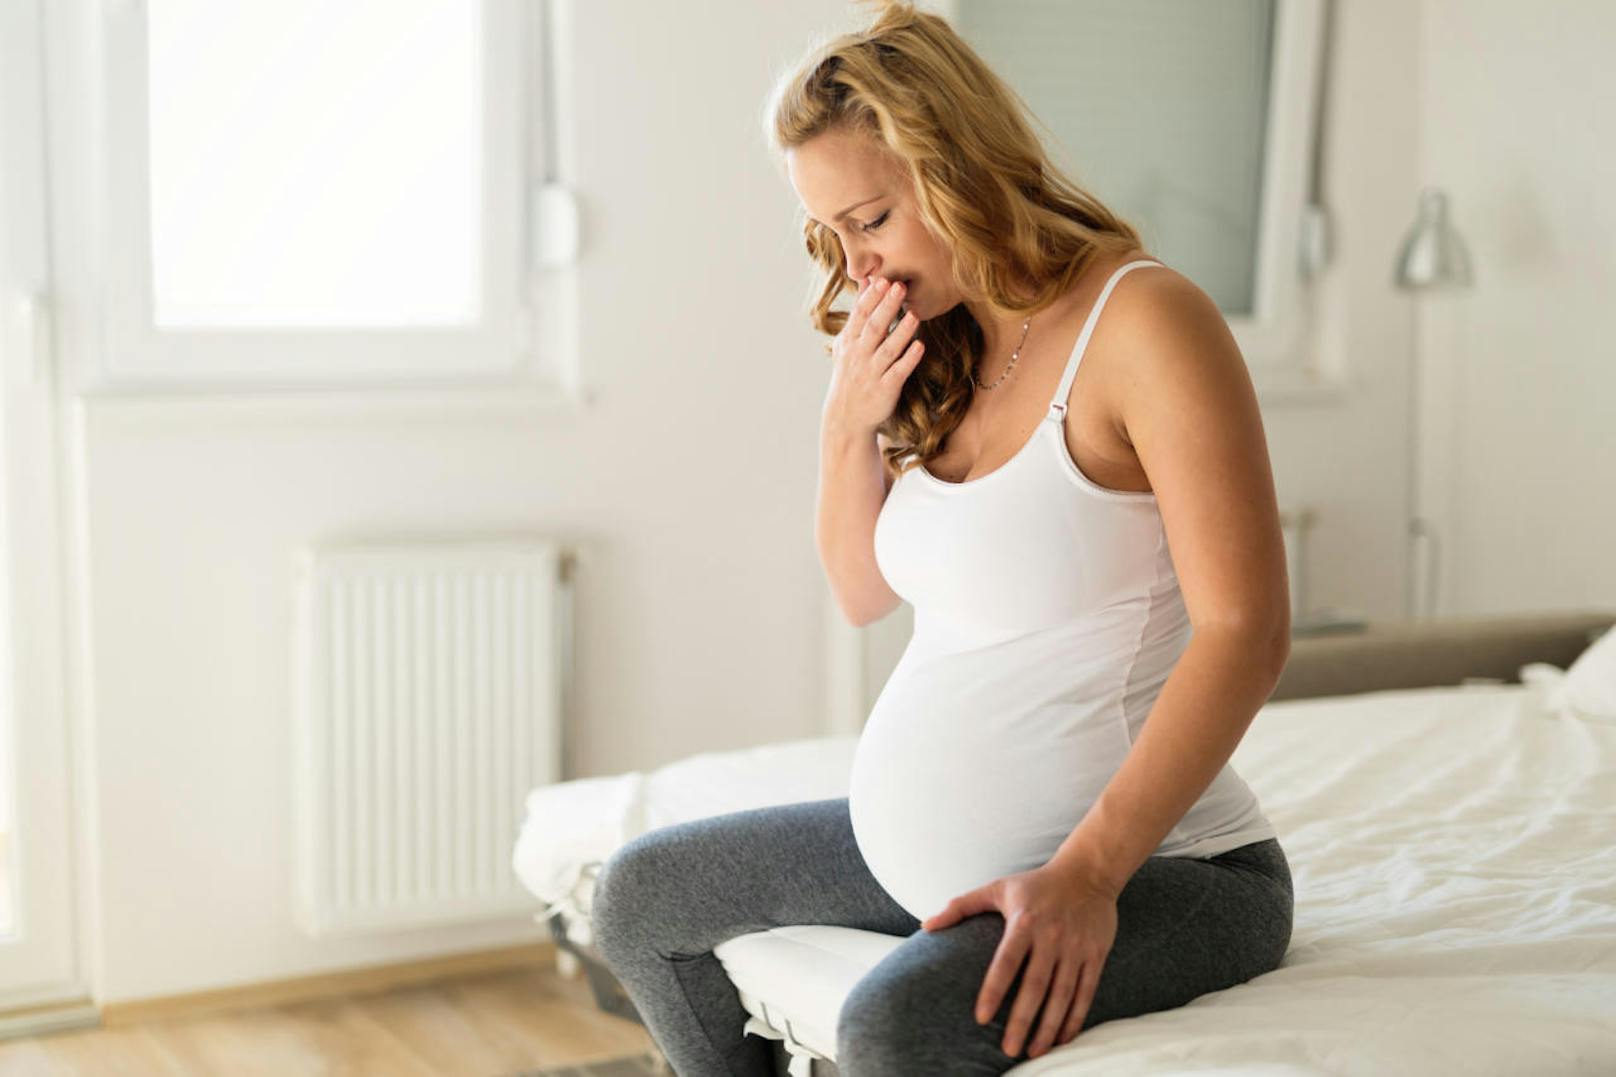 Laut einer Studie von südafrikanischen Forschern lindert Ingwer auch während der ersten Monate der Schwangerschaft die <a href="https://www.netdoktor.at/familie/schwangerschaft/uebelkeit-in-der-schwangerschaft-5632" target="_blank">morgendliche Übelkeit.</a>